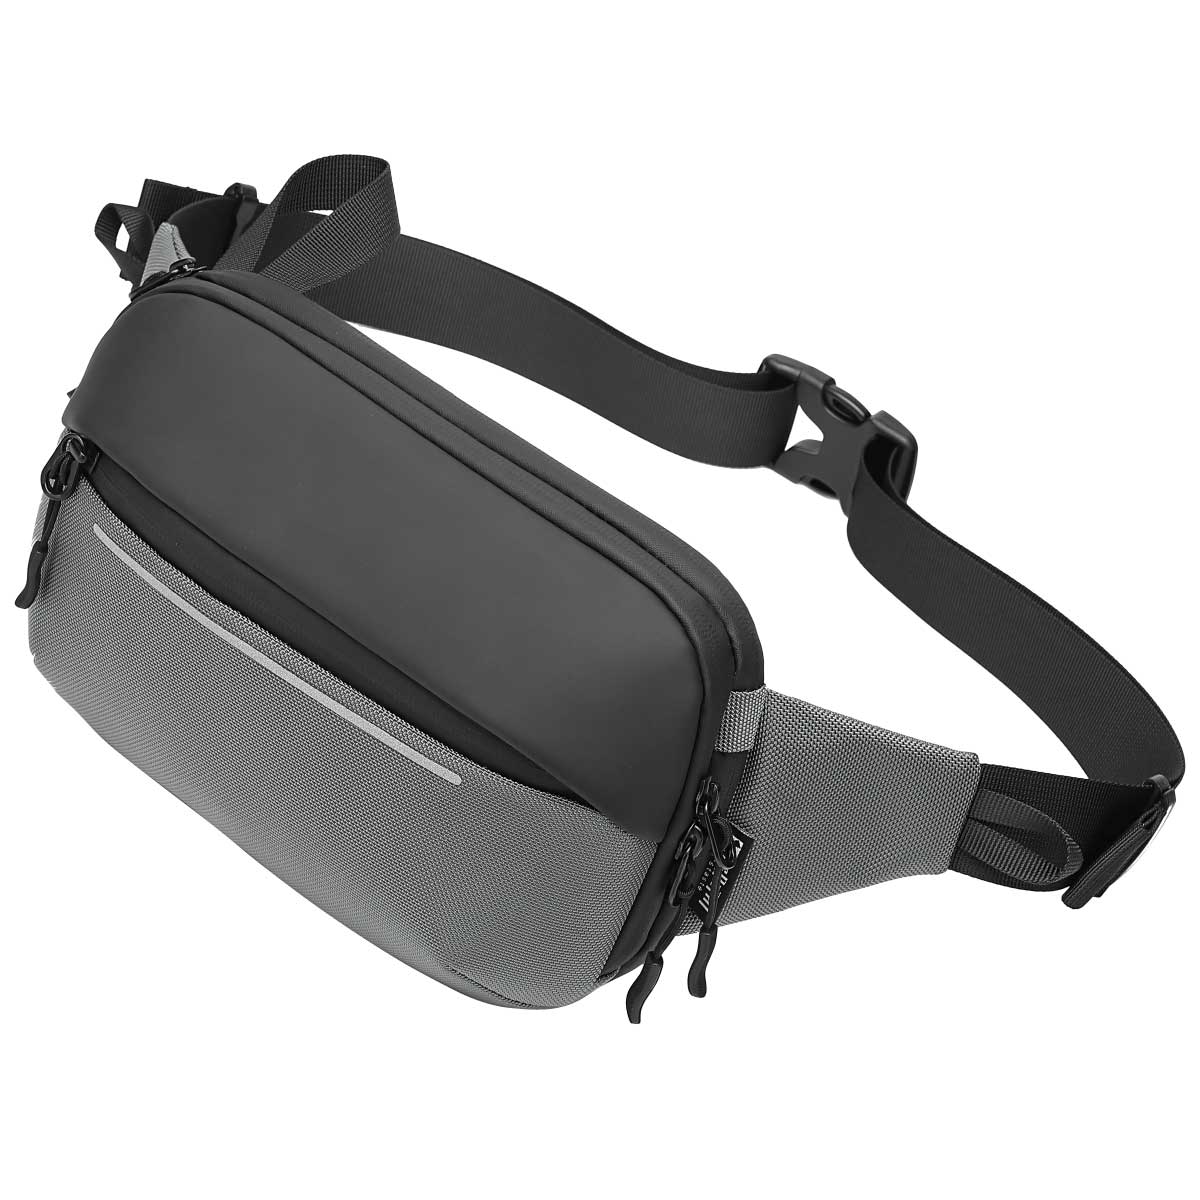 Die Crossbody-Bag von Travison in der Farbe Grau - Schwarz